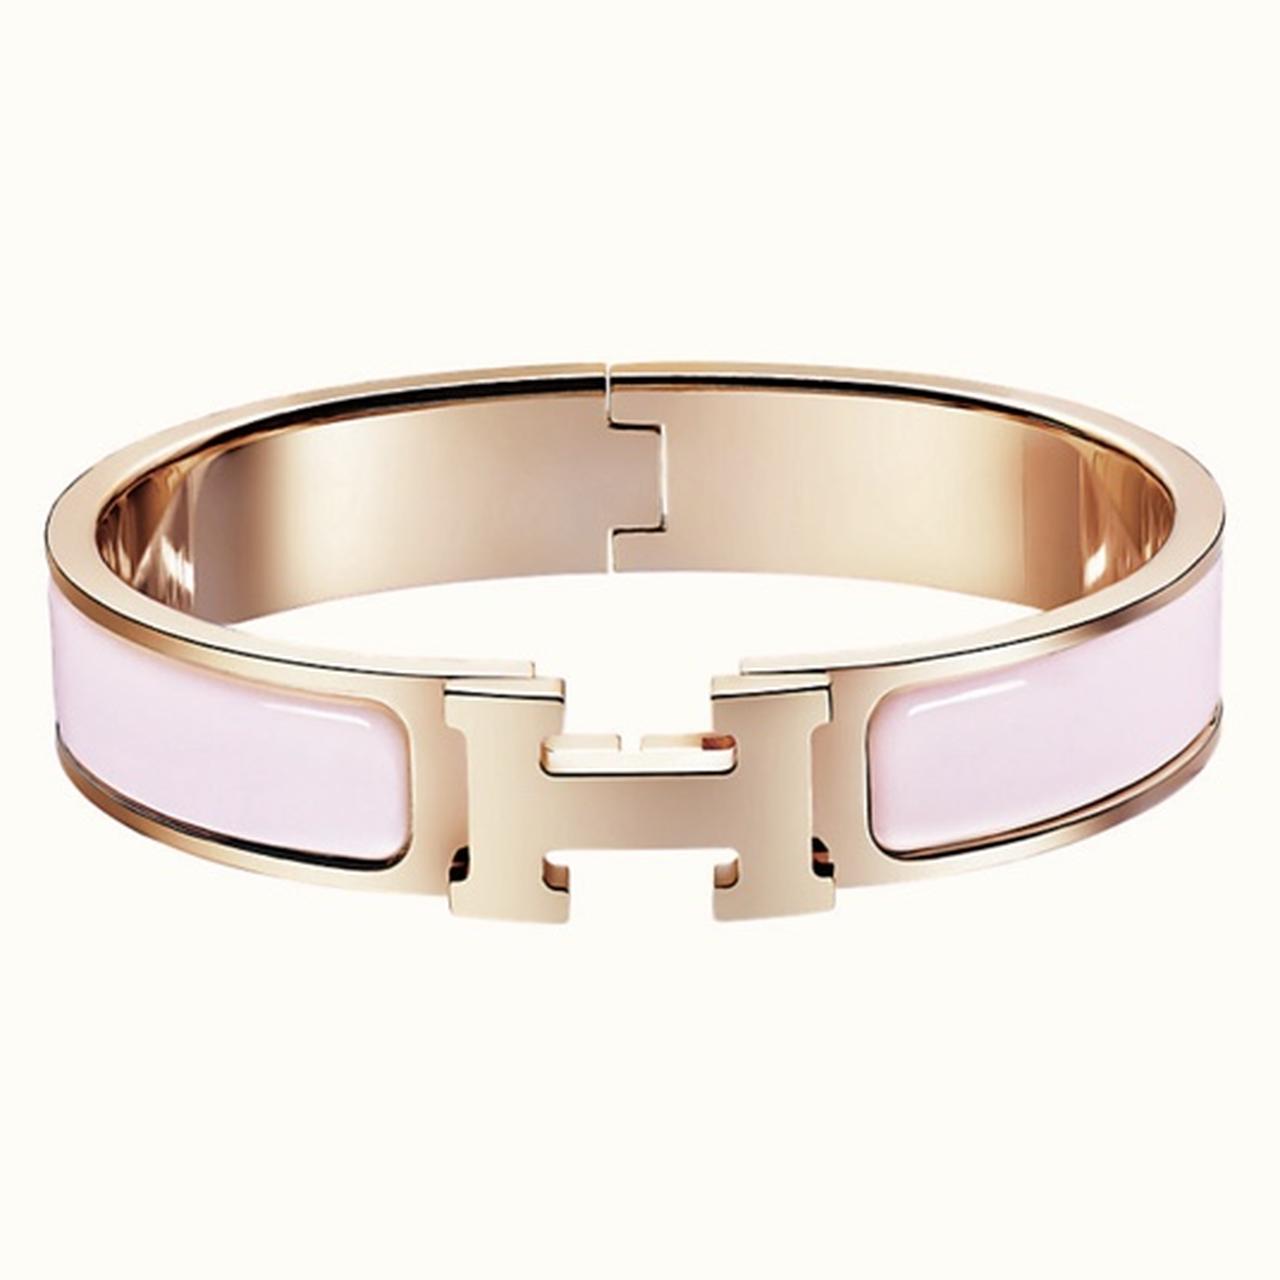 Hermes bracelet - Depop